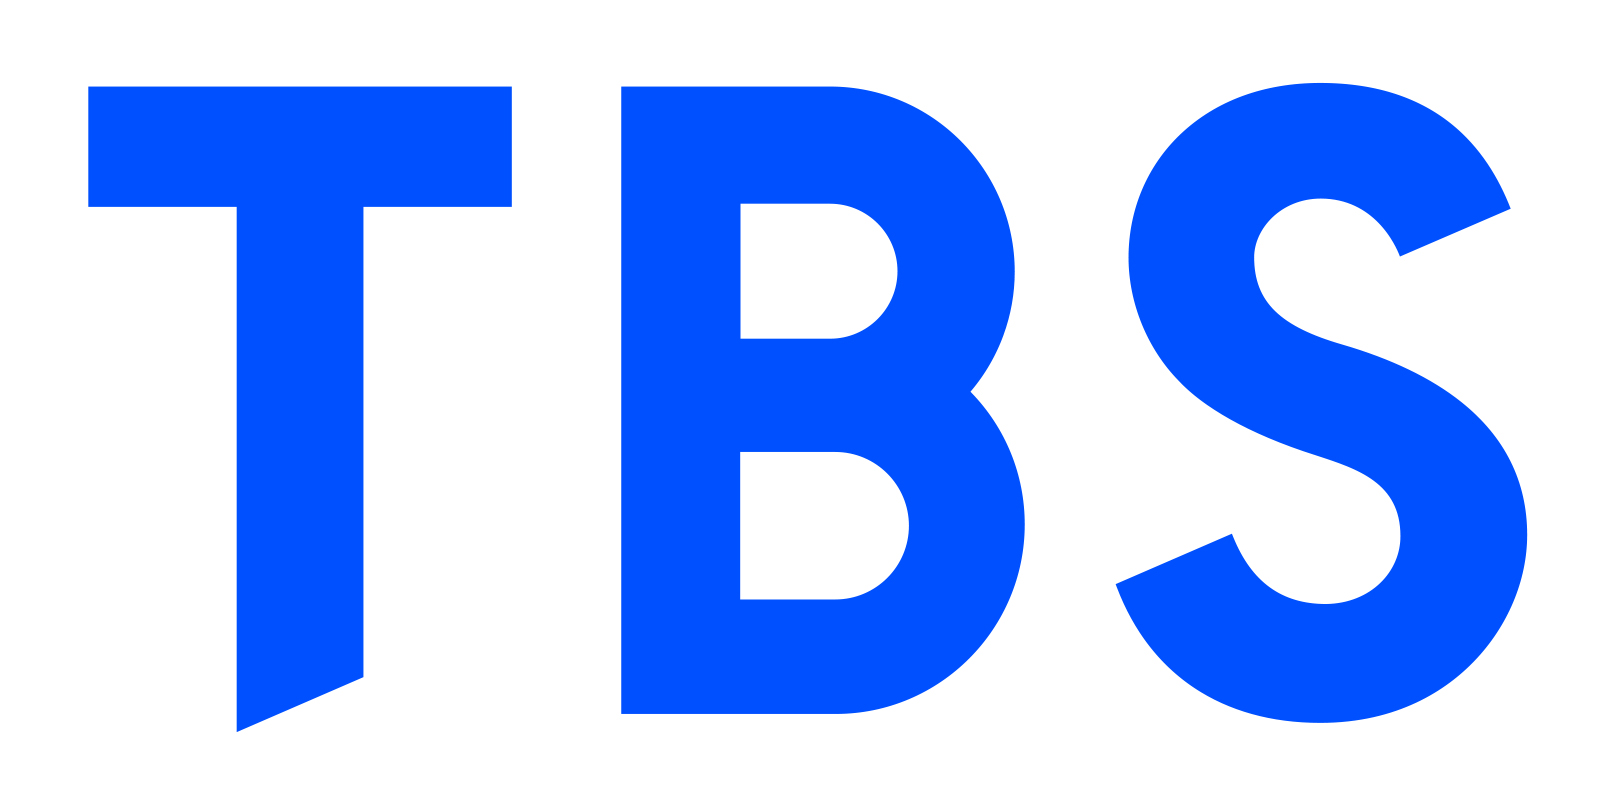 株式會社TBS TV